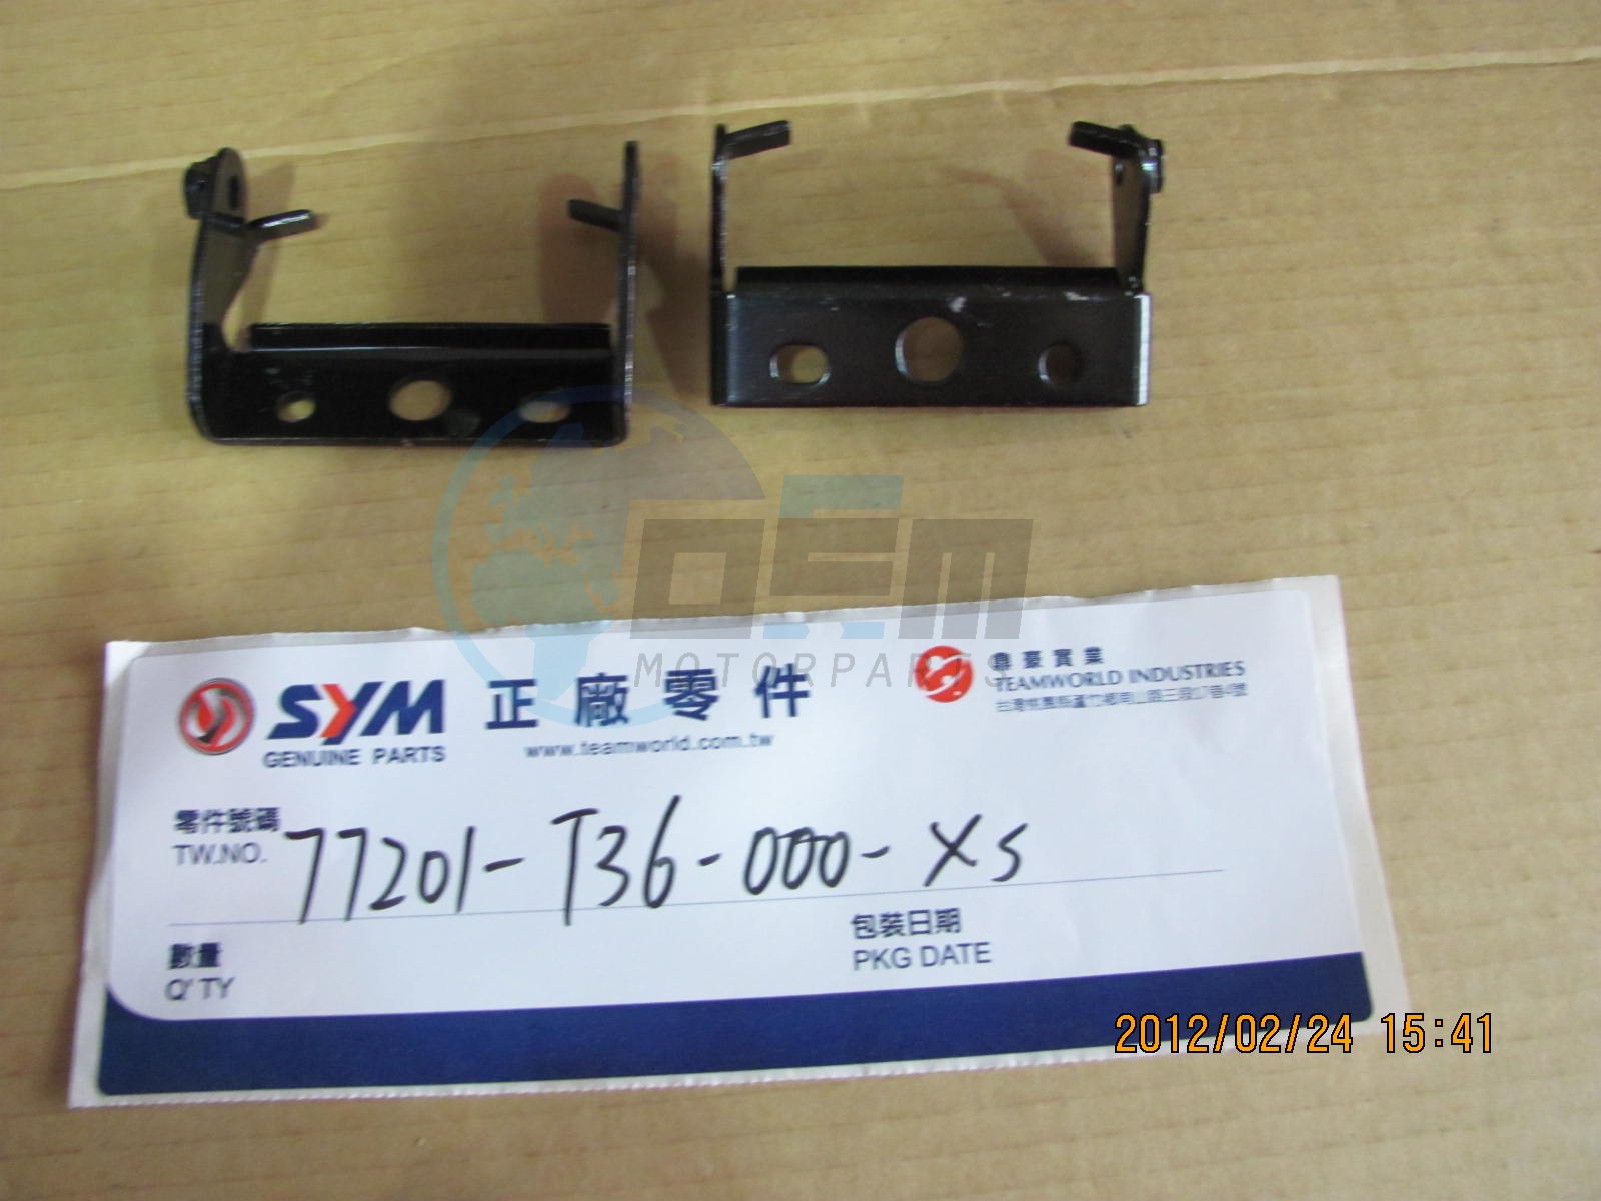 Product image: Sym - 77201-T36-000-XS - SEAT HINGE SET  0